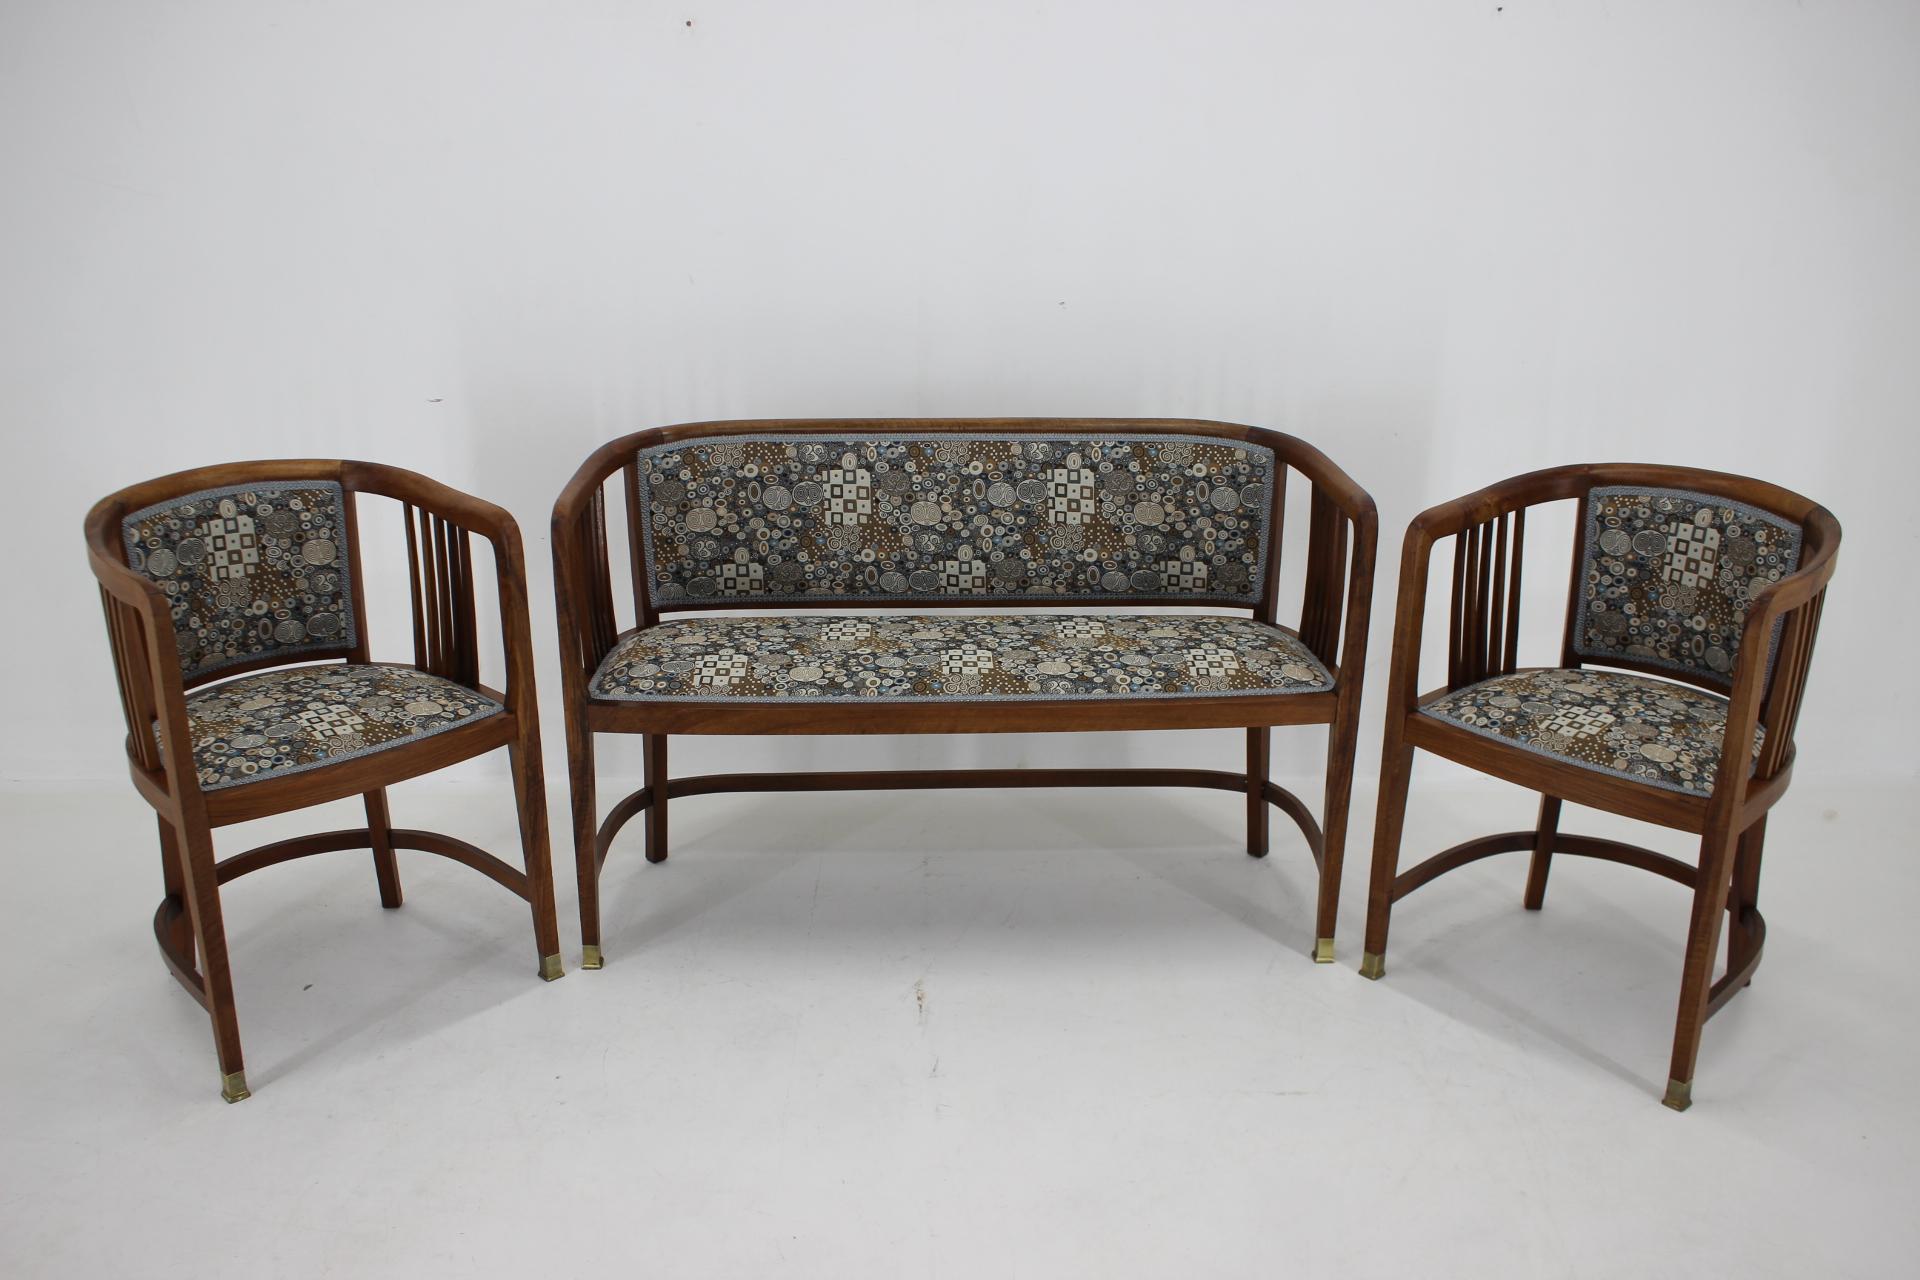  - sorgfältig renoviert 
- Professionell neu gepolstert mit einem von Gustav Klimt entworfenen Qualitätsstoff 
- Sessel: H78, B53, T47 cm